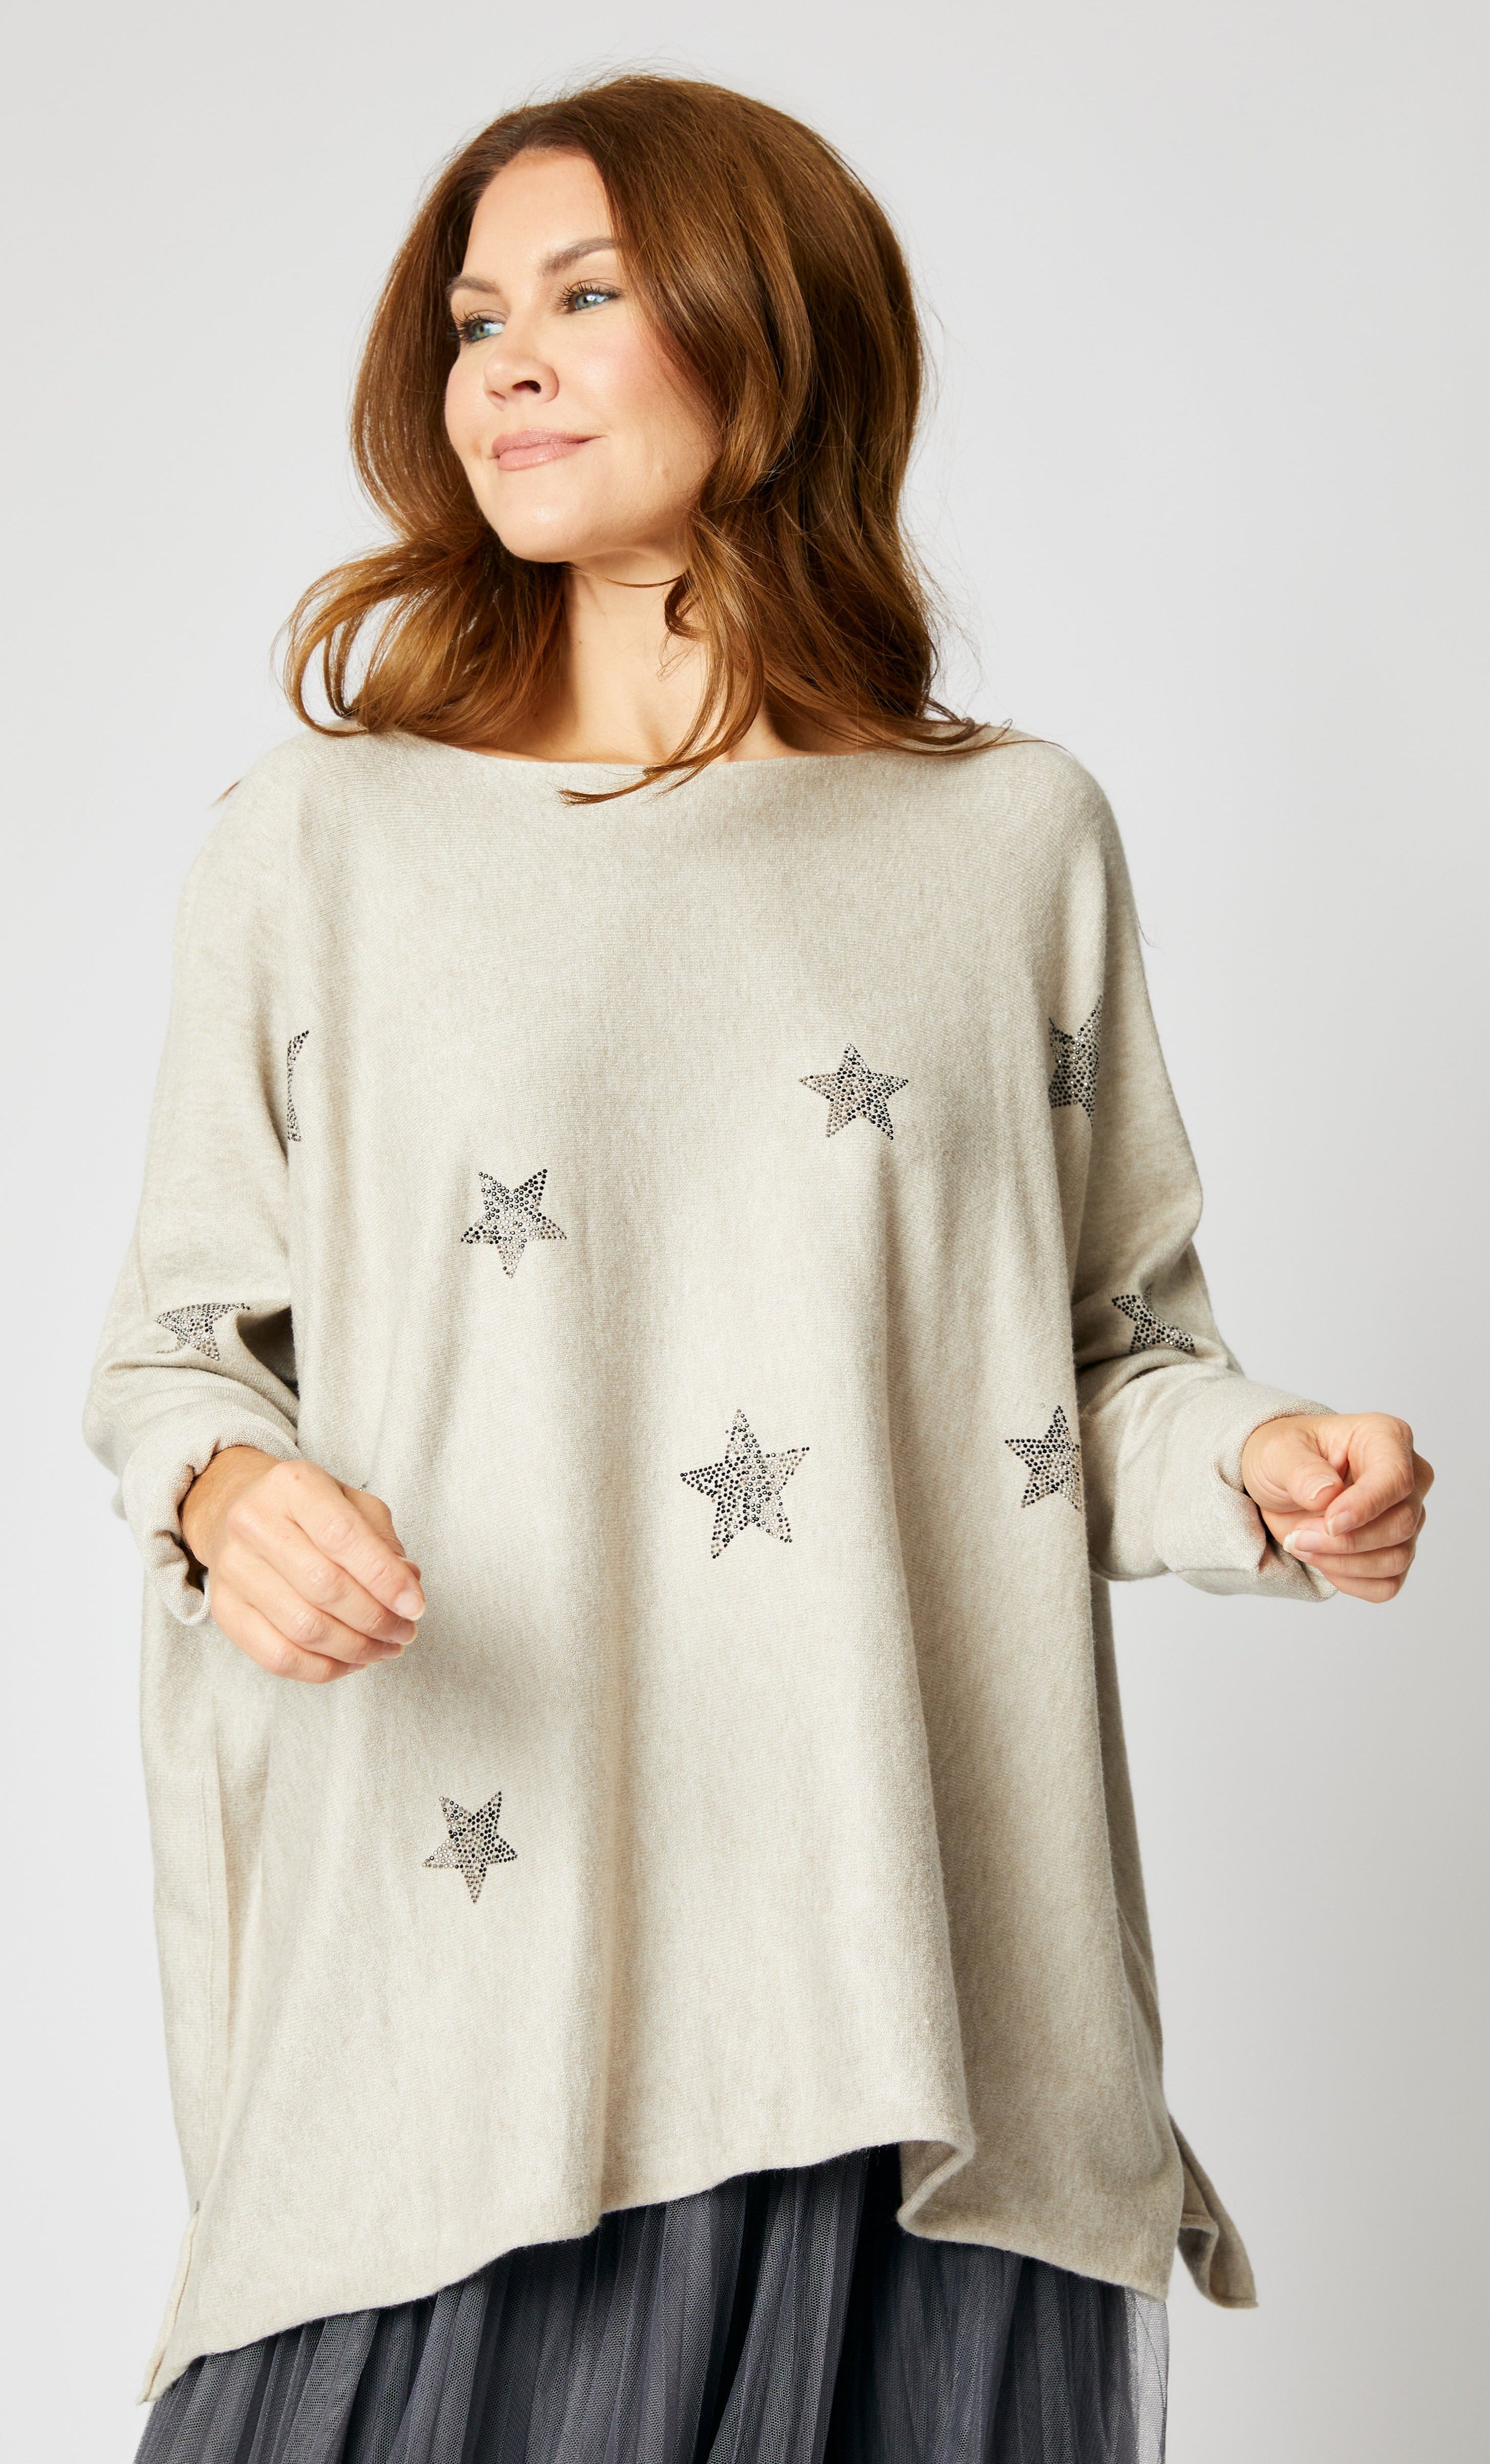 Twinkling Star Sweater